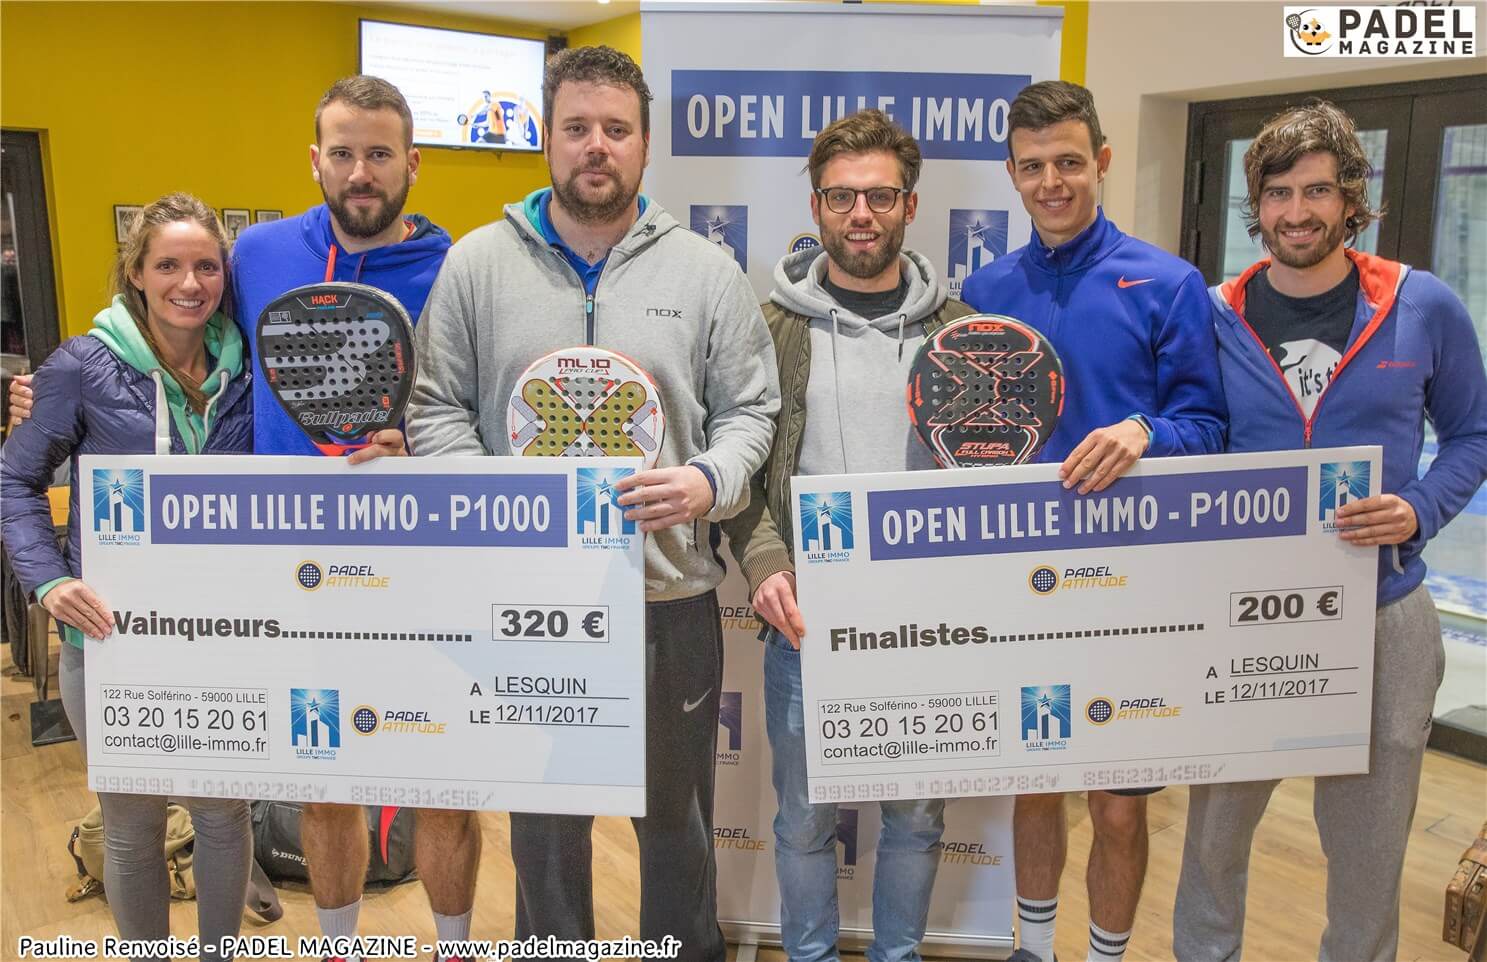 Renvoisé / Romanowski wins the LILLE IMMO Open